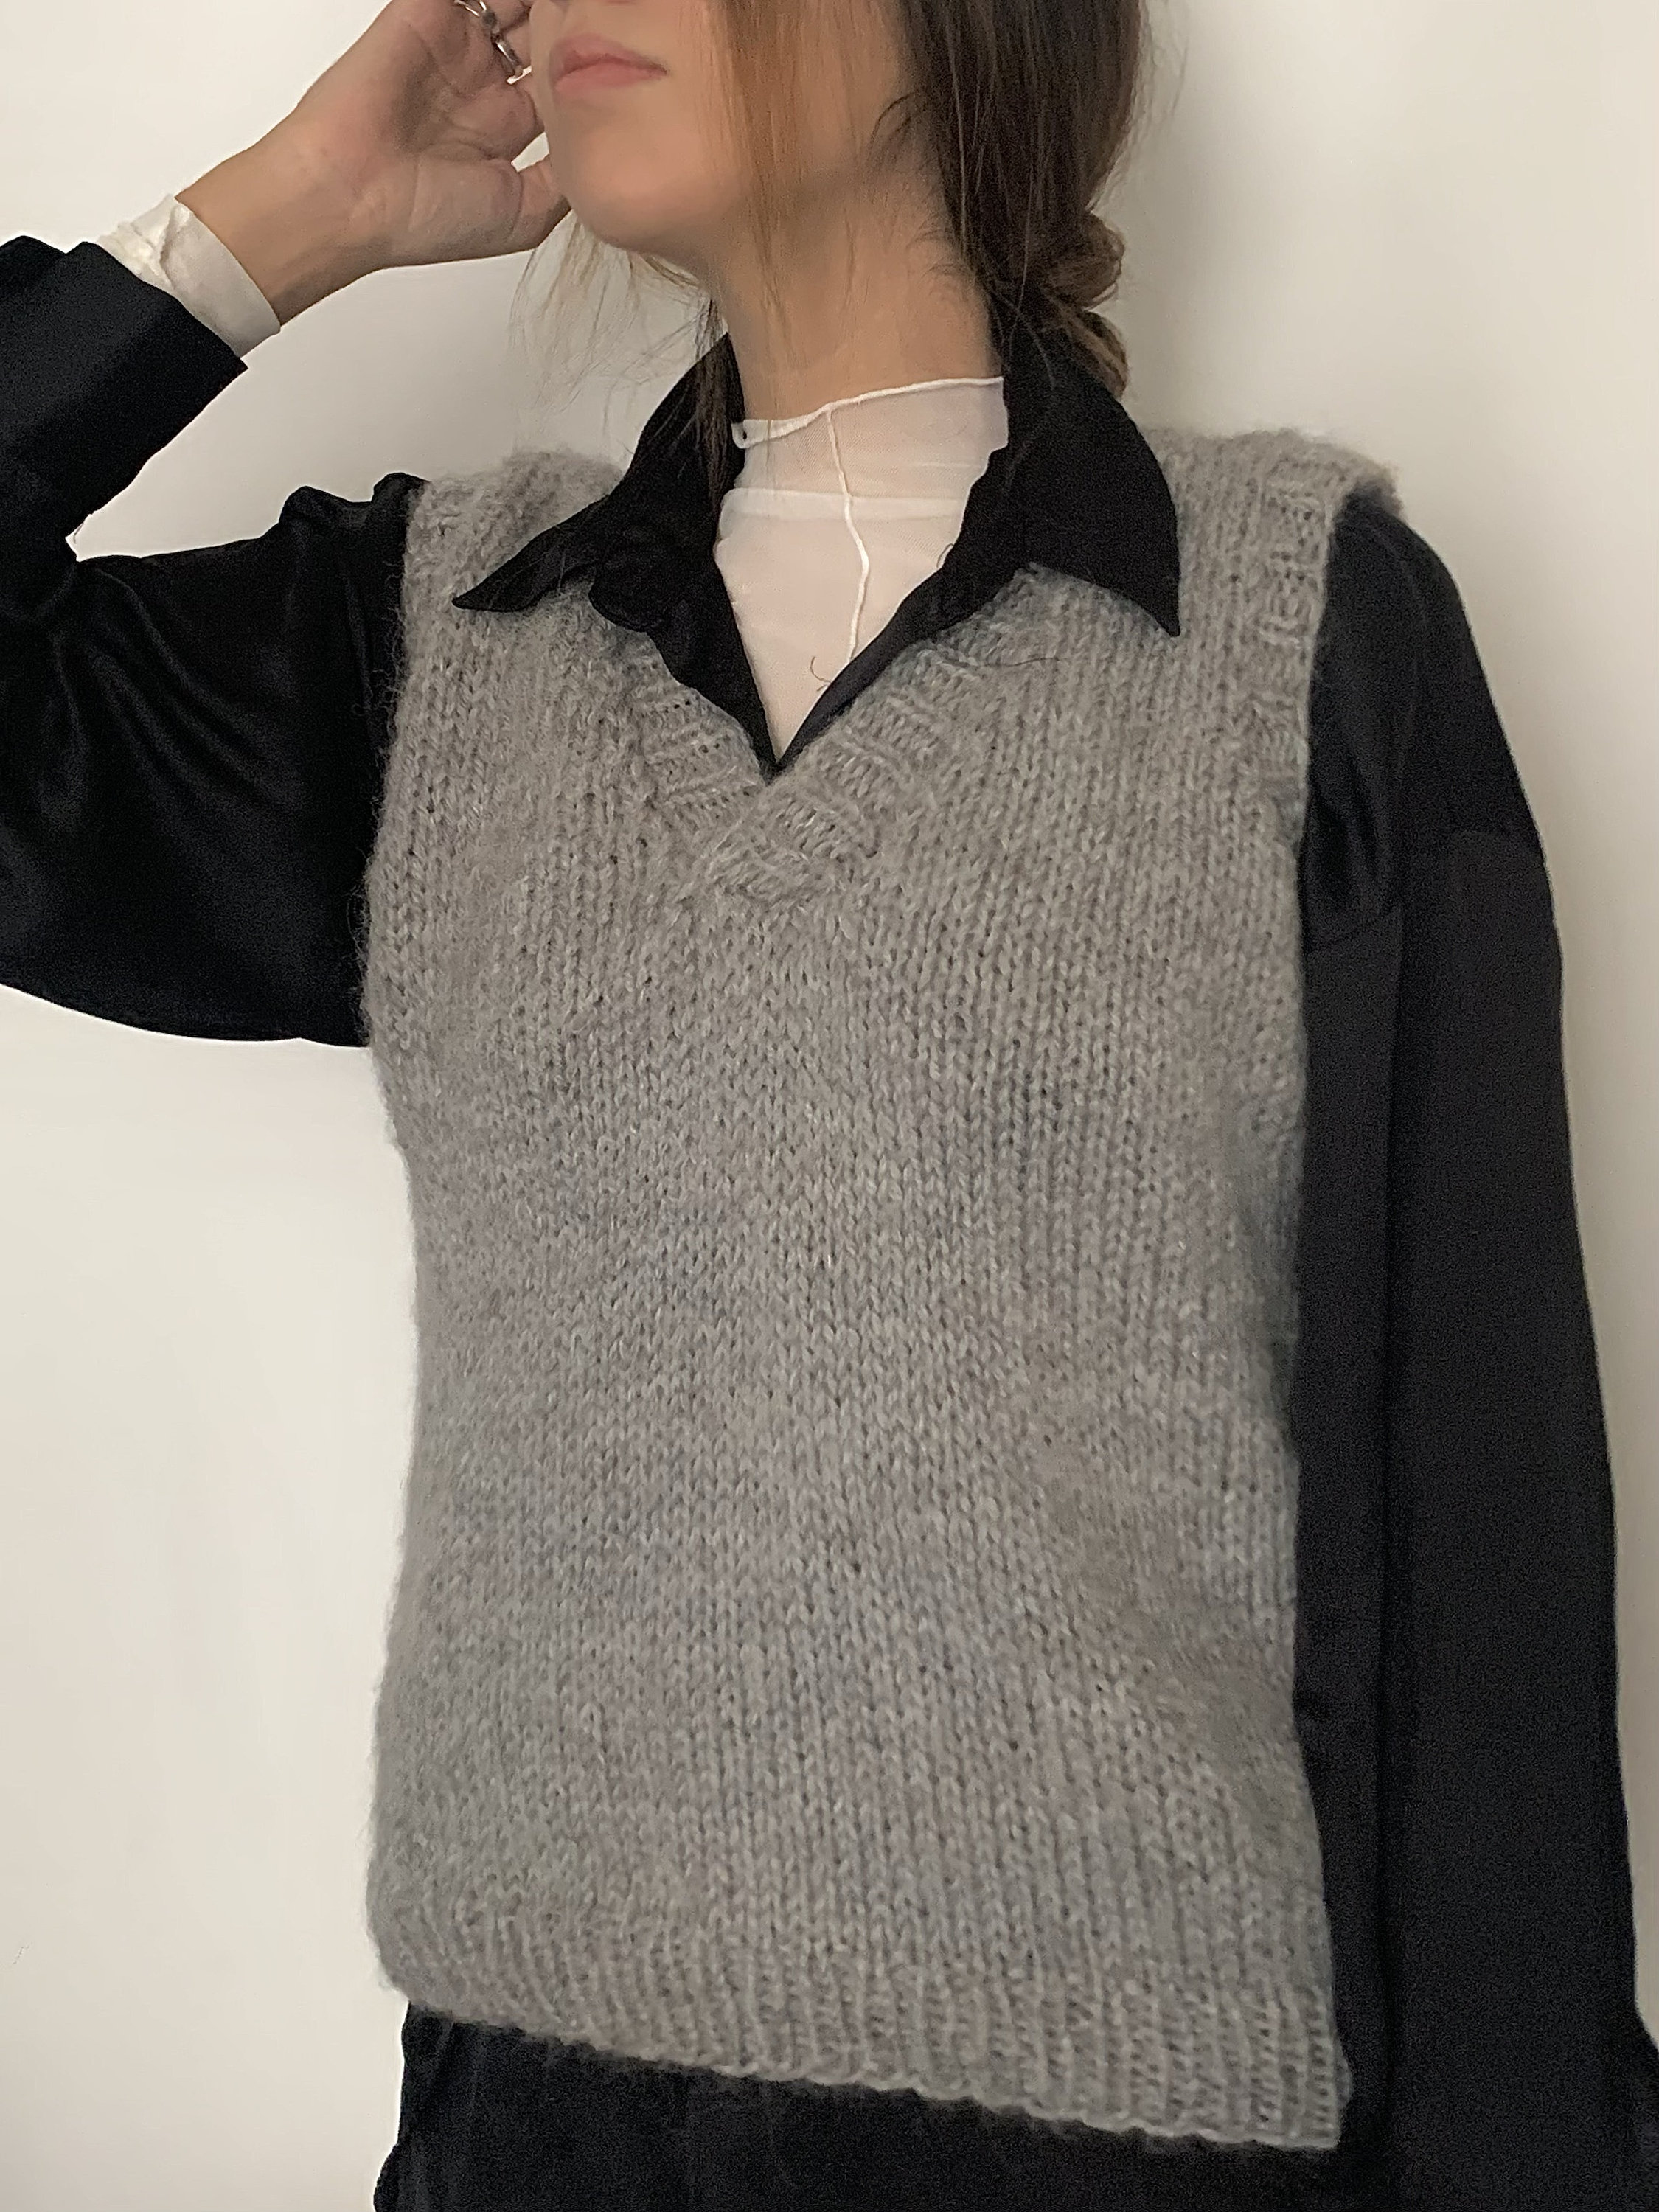 SPRING SLIPOVER Sweater Vest Knitting Pattern Intermediate - Etsy